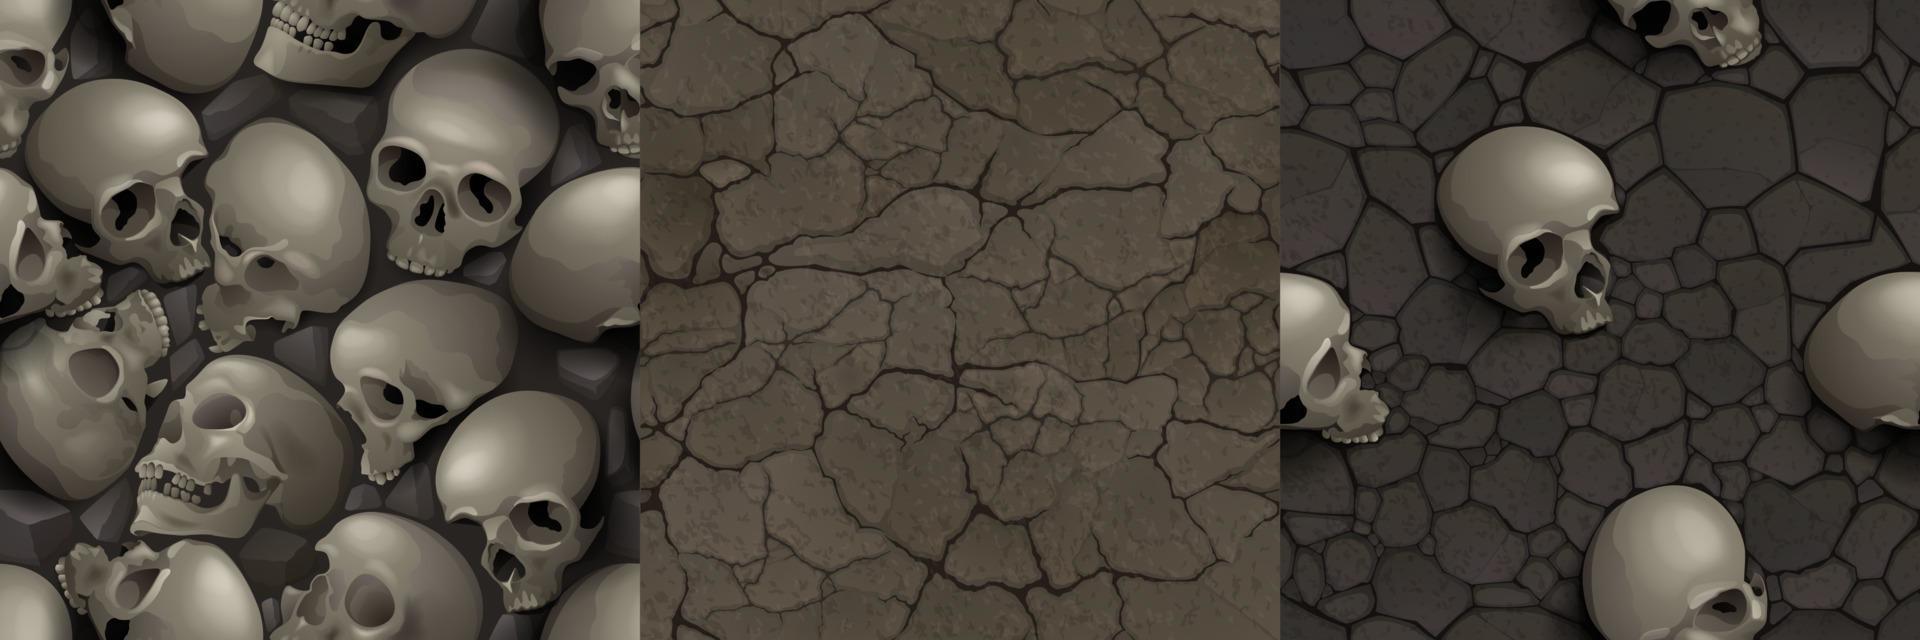 Texturen aus trockenem Boden und Boden mit vergrabenen Schädeln vektor